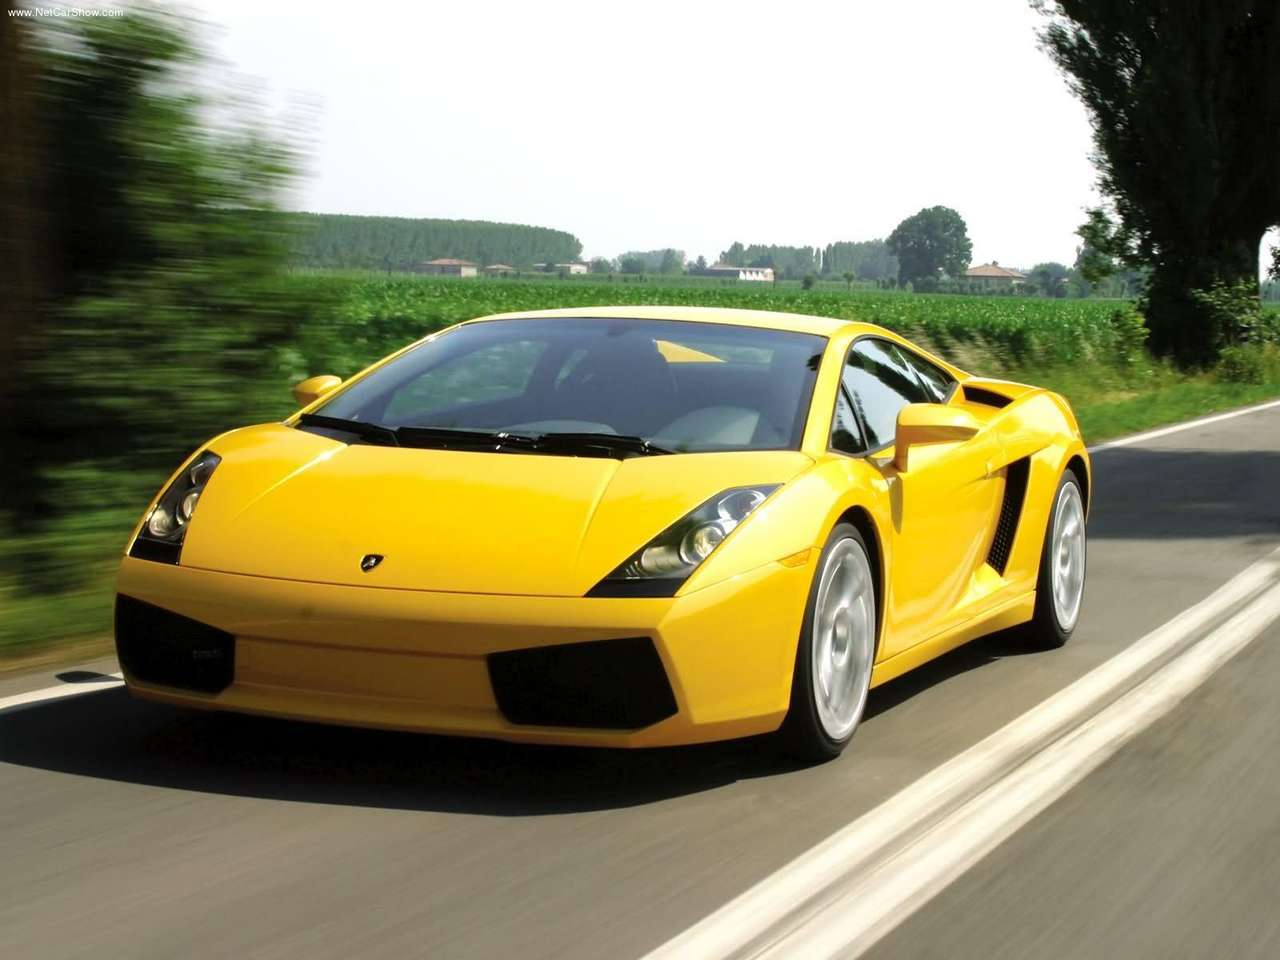 Lamborghini Gallardo Wallpaper HD In Cars Imageci